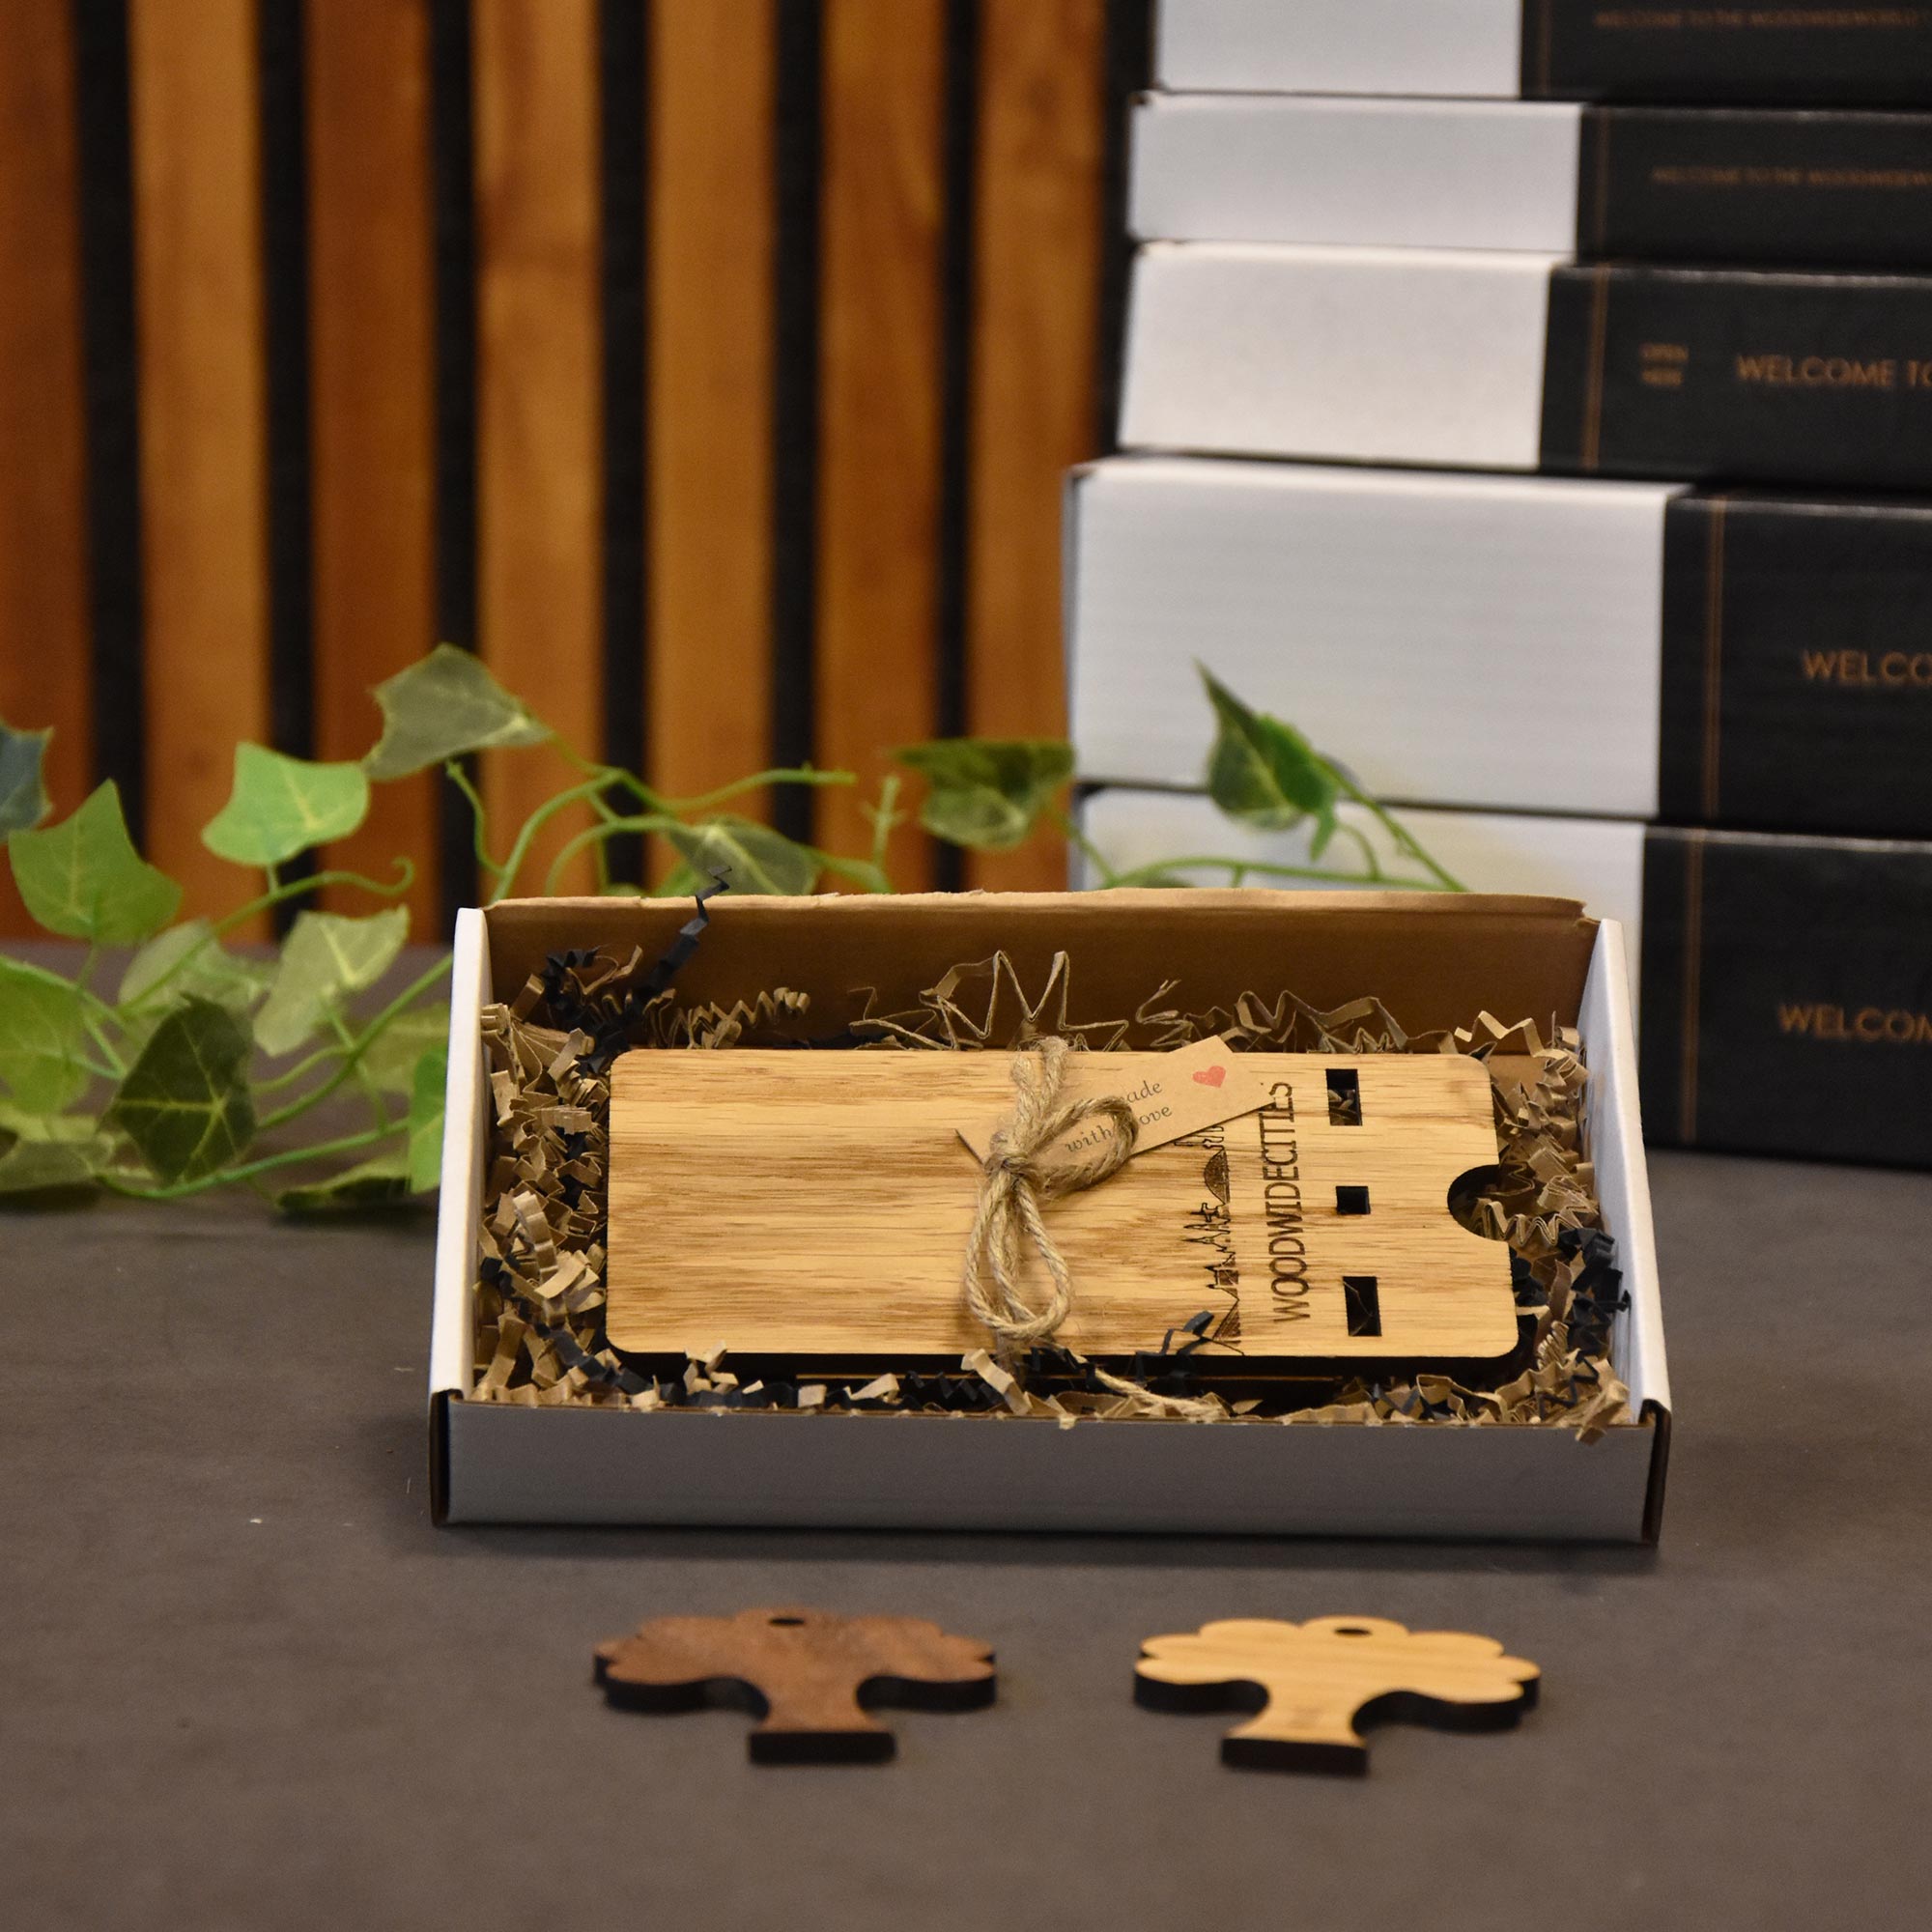 Skyline Telefoonhouder Gent houten cadeau decoratie relatiegeschenk van WoodWideCities